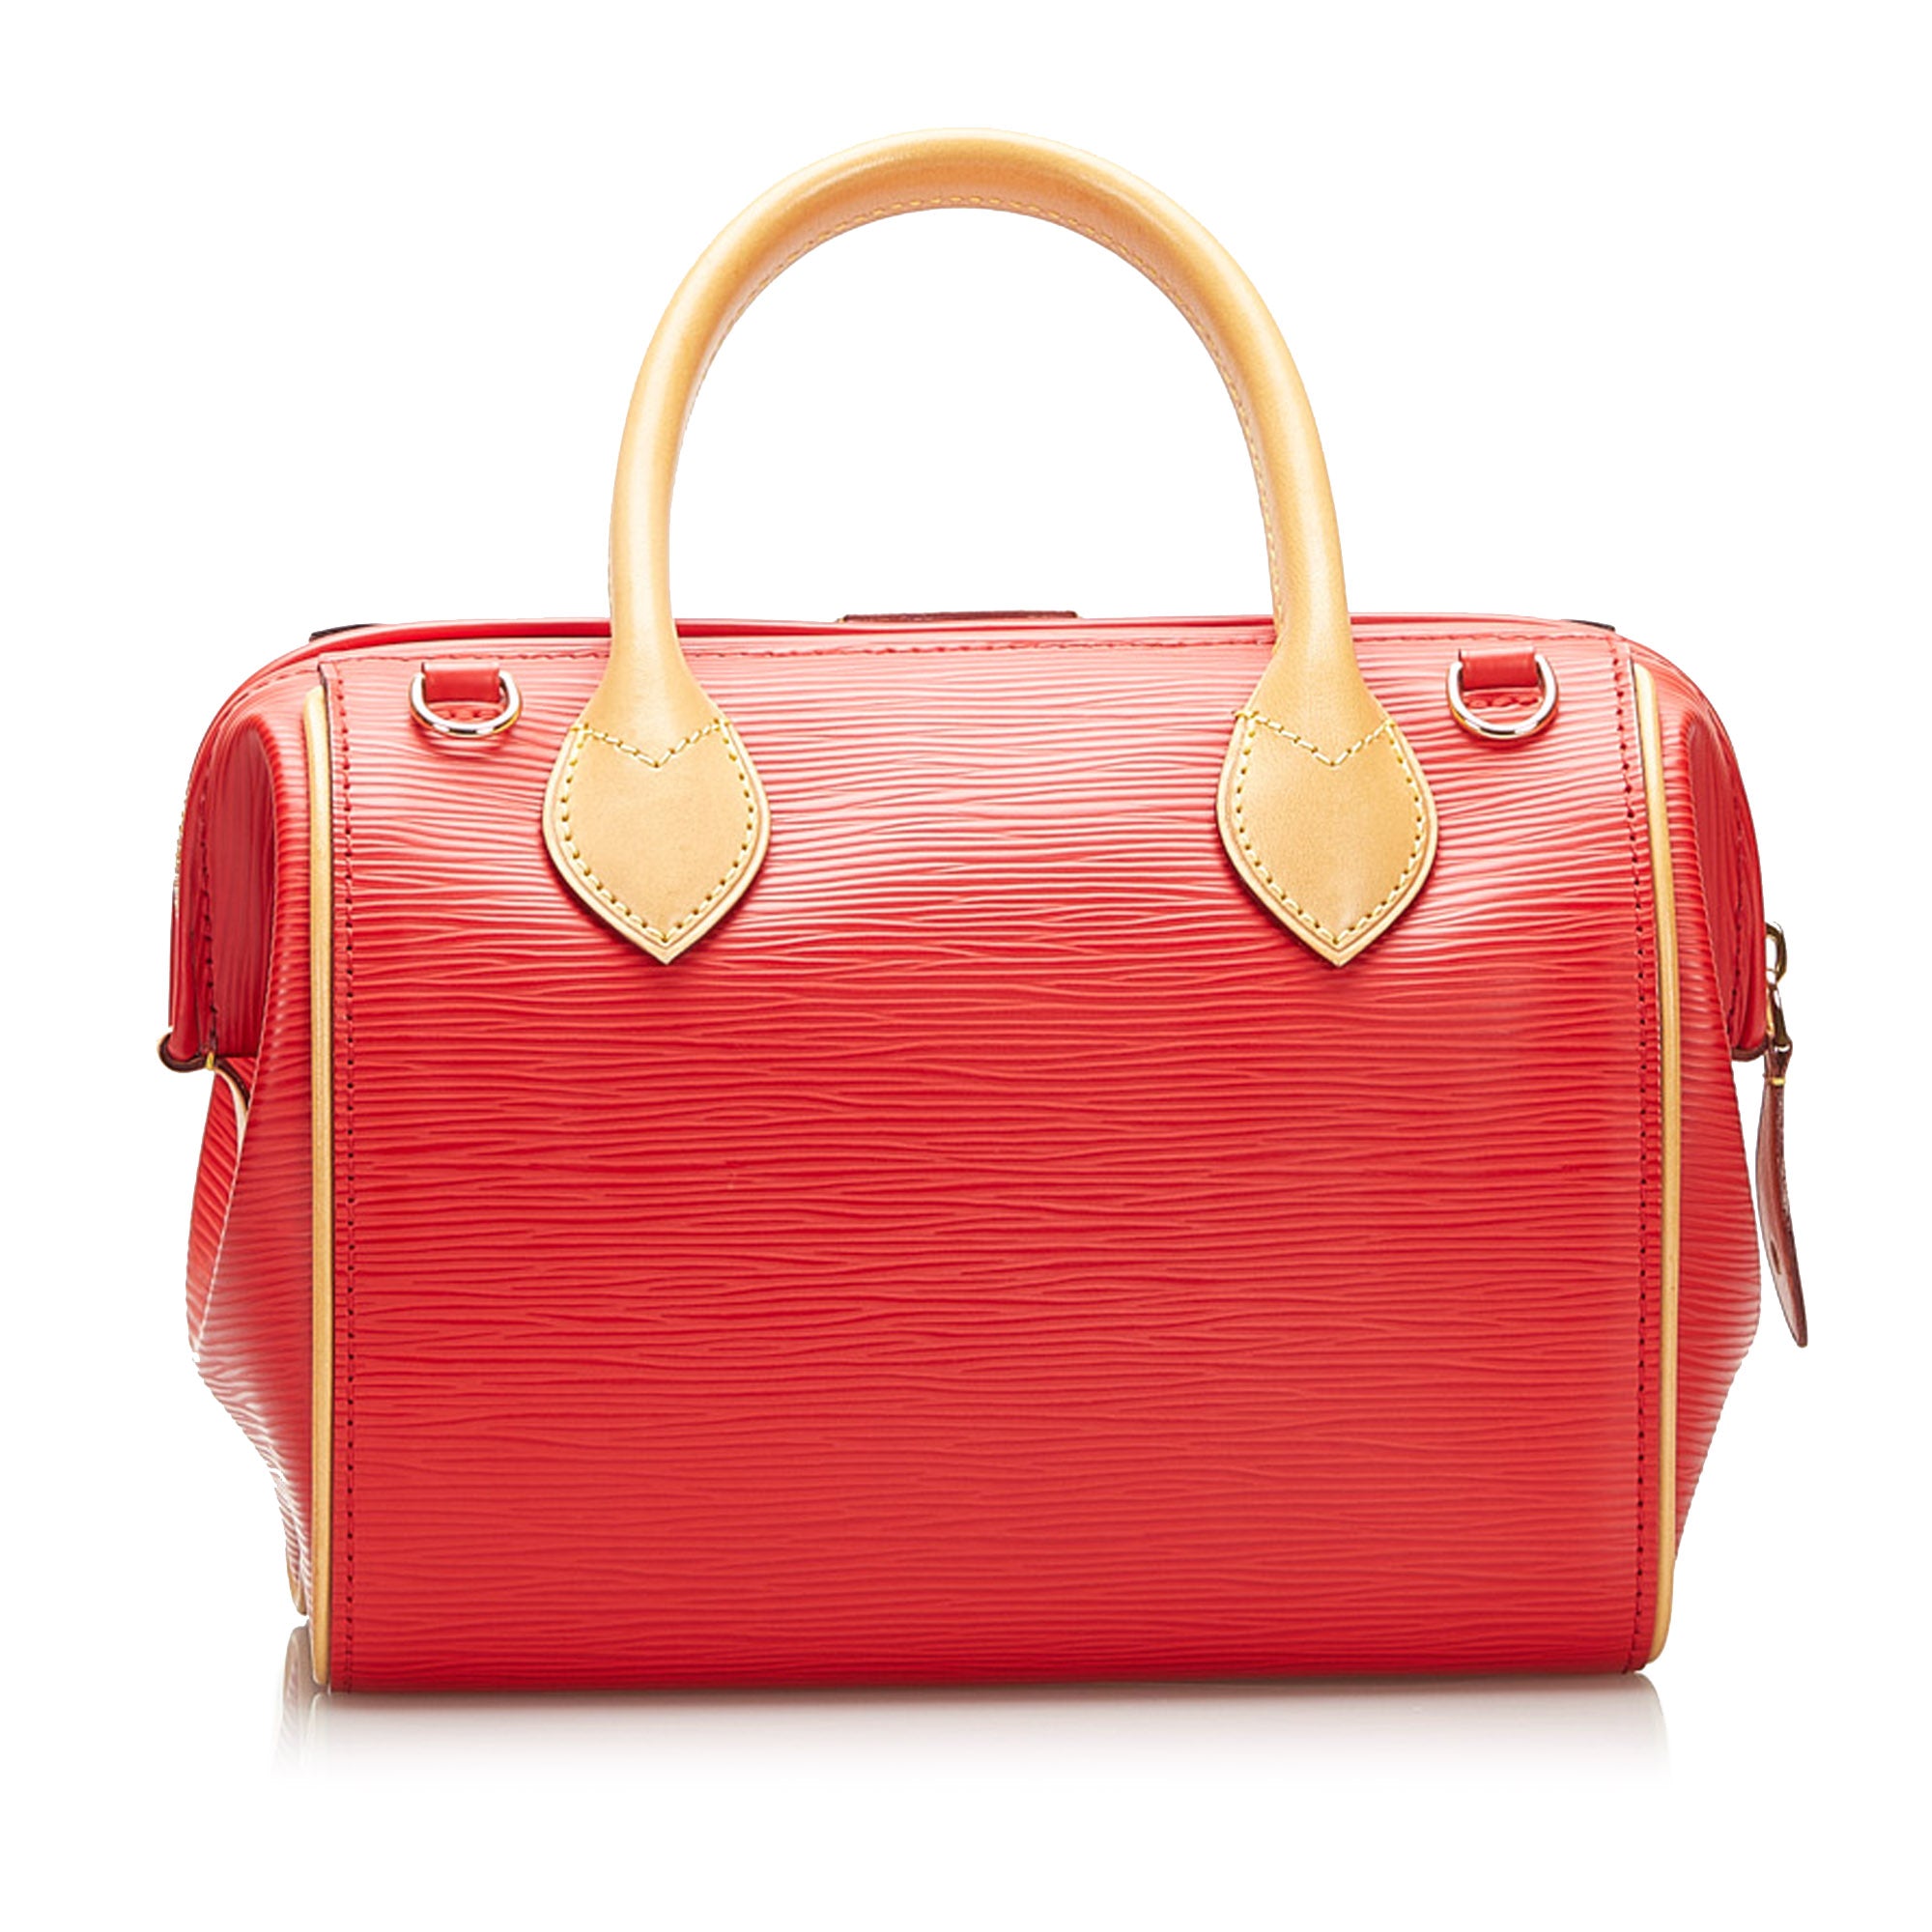 Louis Vuitton Red Epi Leather SPEEDY 25